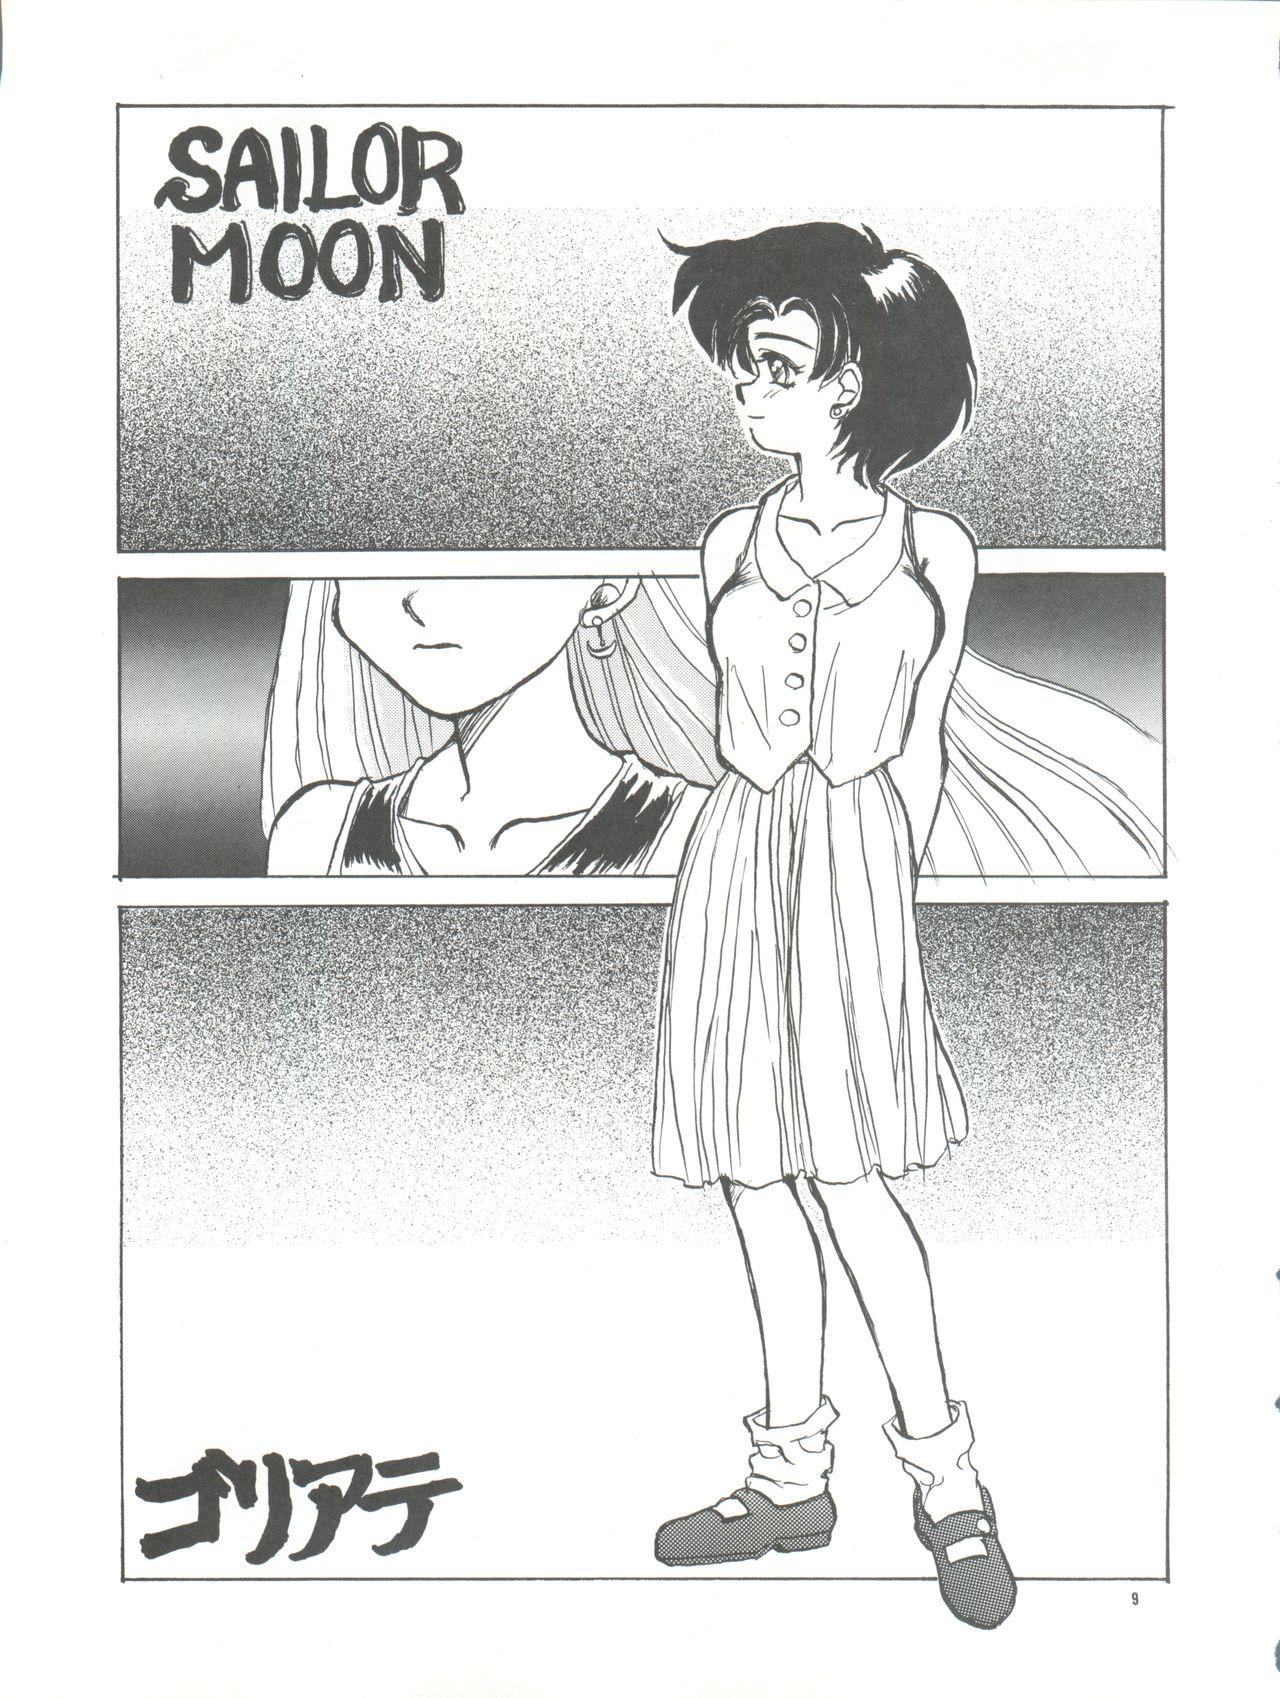 PUSSY CAT Vol. 26 Sailor Moon 3 8